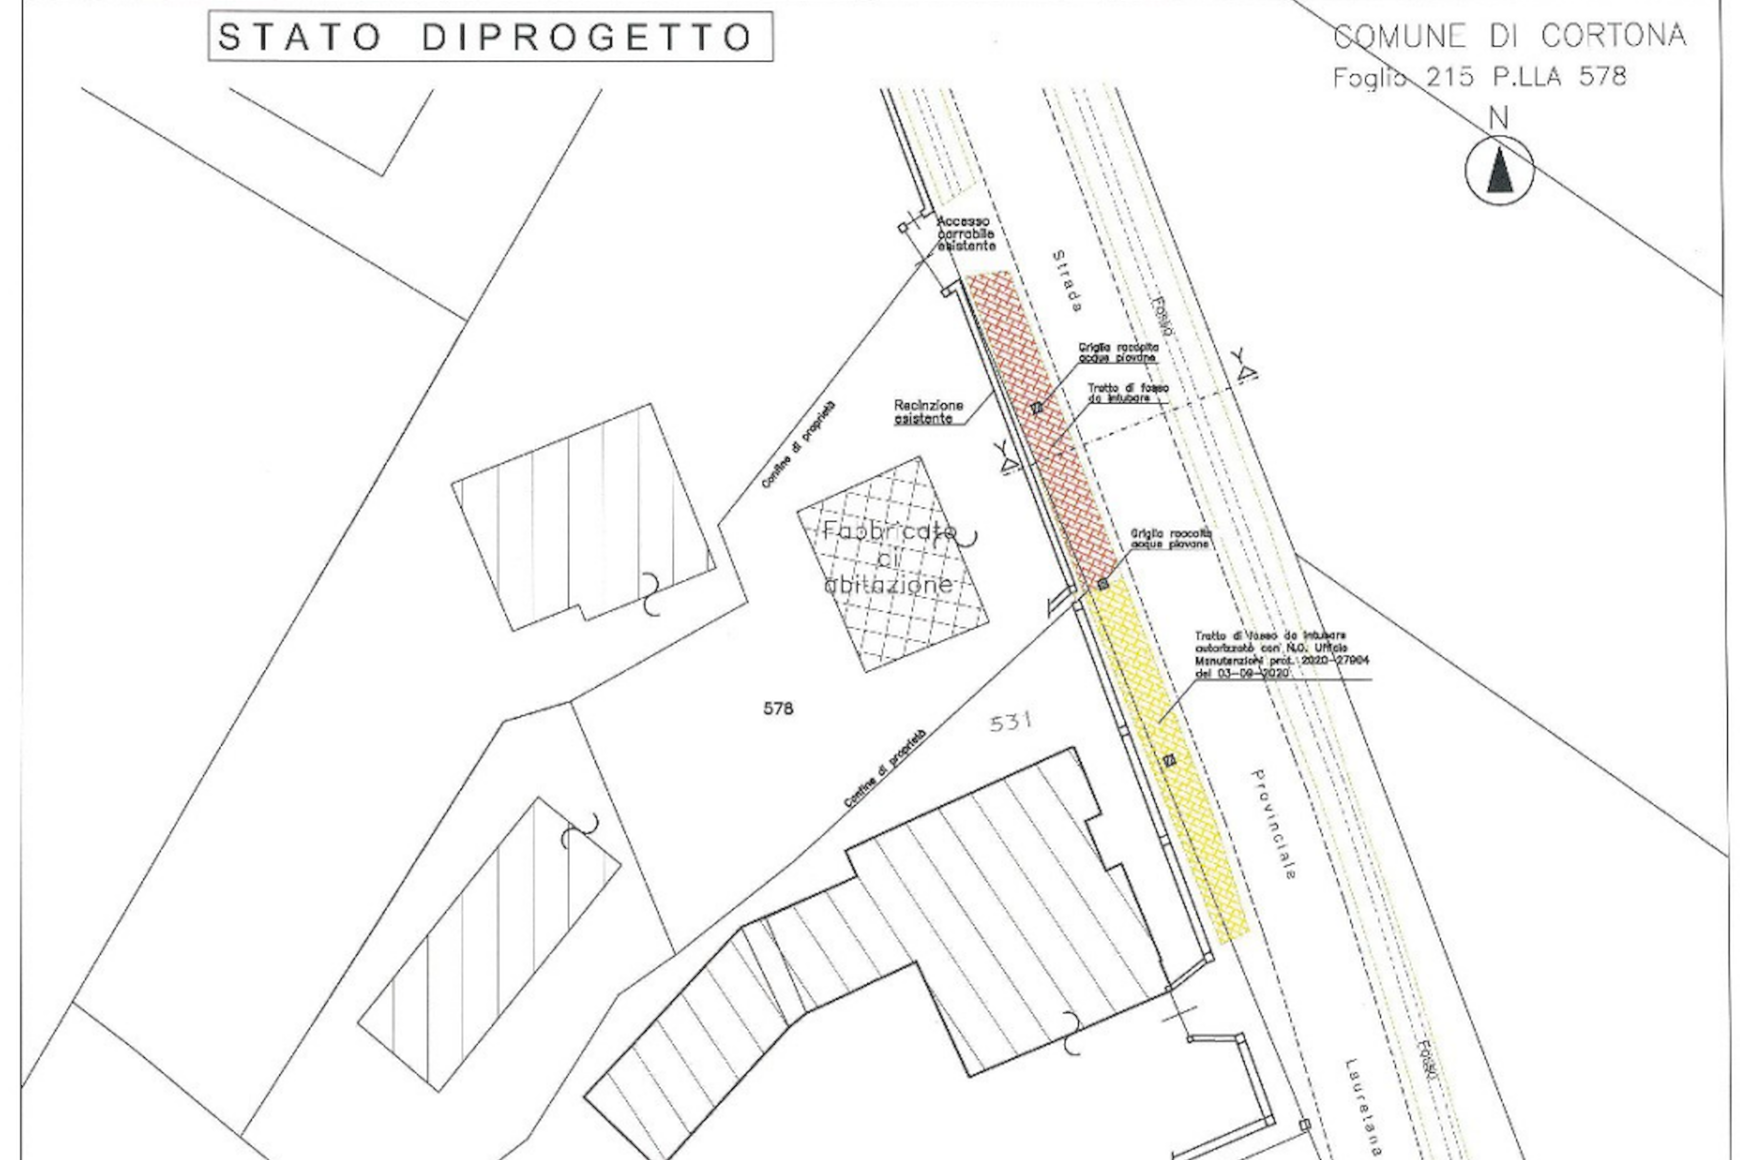 Temporanea istituzione di un senso unico alternato a Cortona, lungo la Strada Comunale ex SP Lauretana per lavori